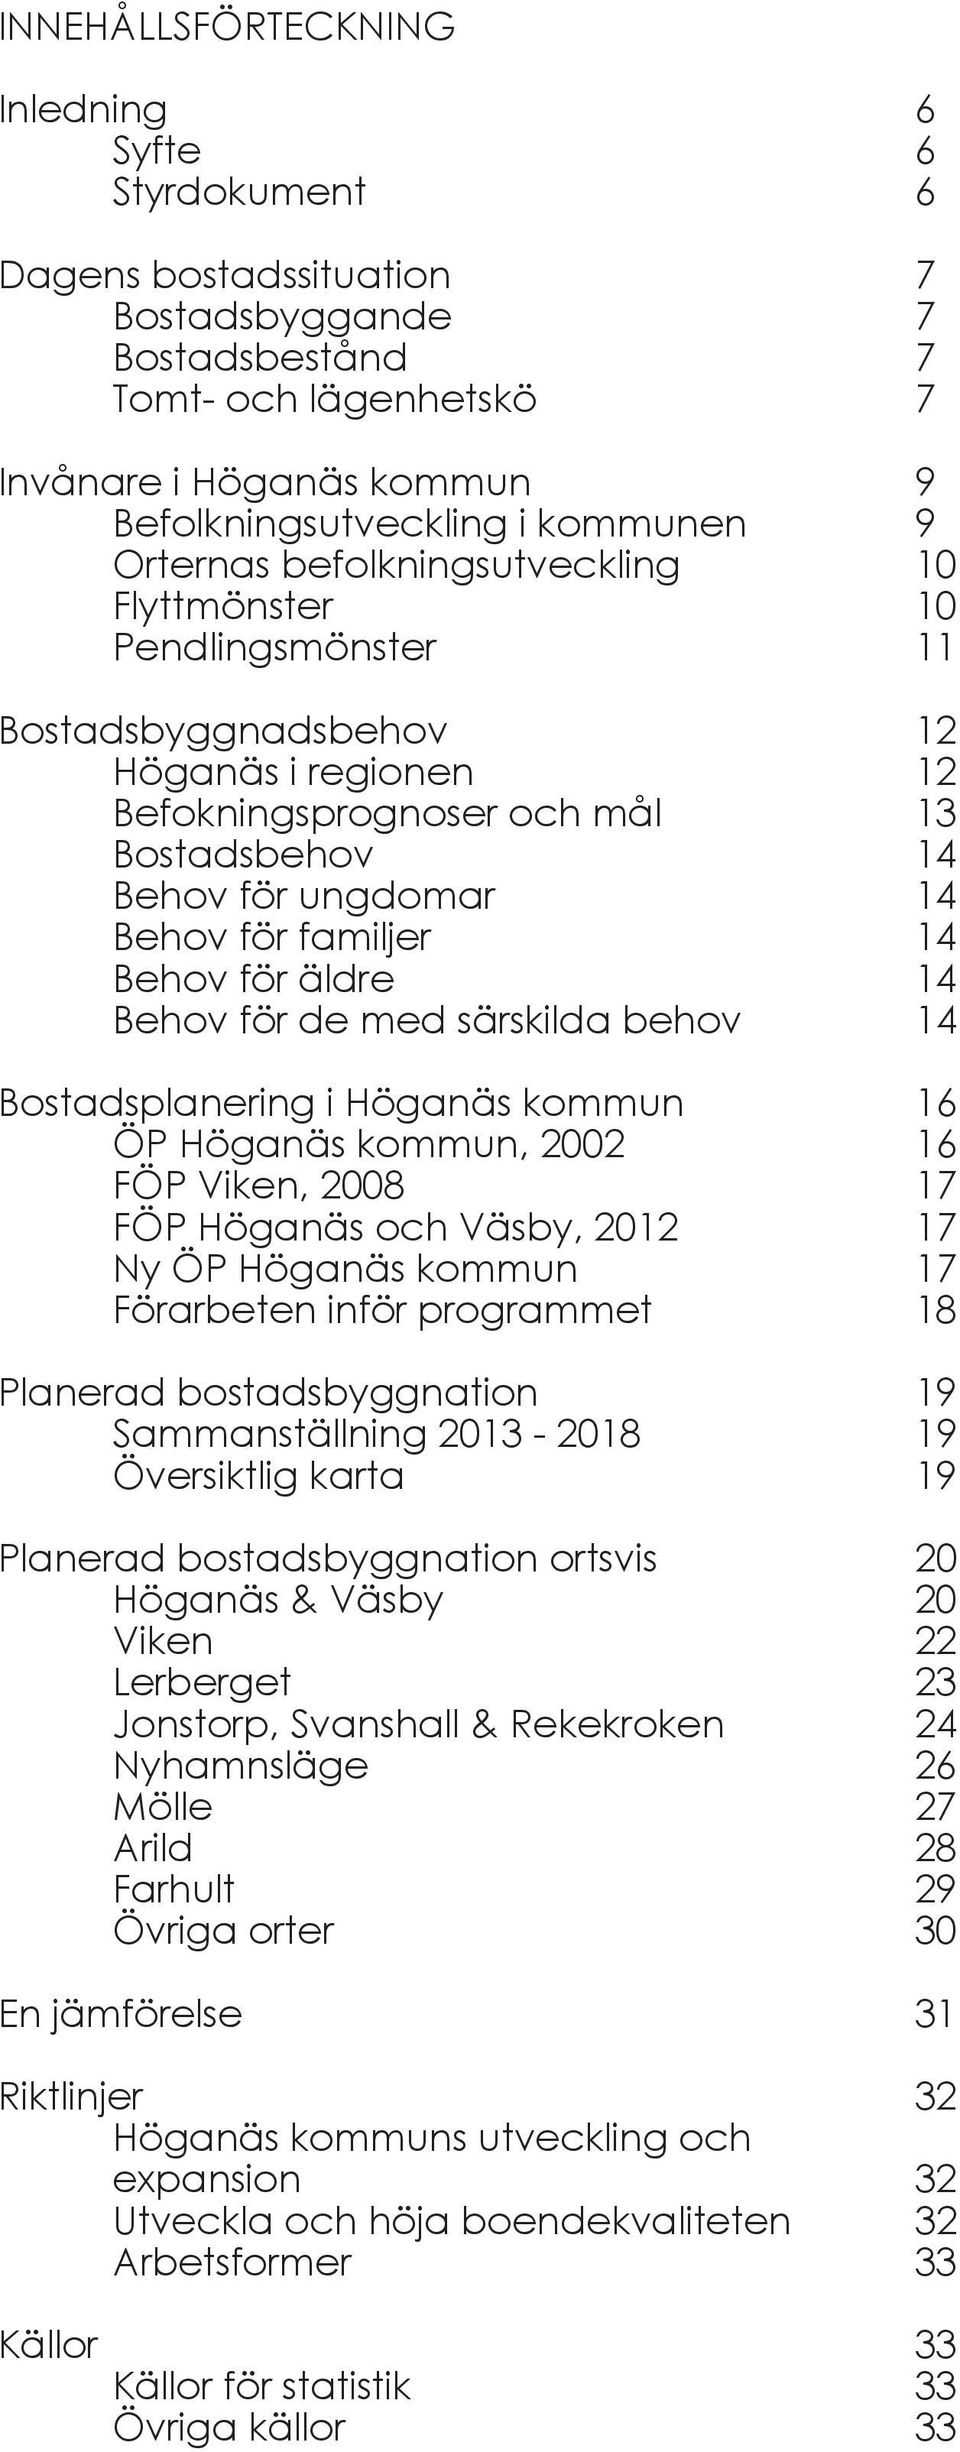 Behov för familjer 14 Behov för äldre 14 Behov för de med särskilda behov 14 Bostadsplanering i Höganäs kommun 16 ÖP Höganäs kommun, 2002 16 FÖP Viken, 2008 17 FÖP Höganäs och Väsby, 2012 17 Ny ÖP